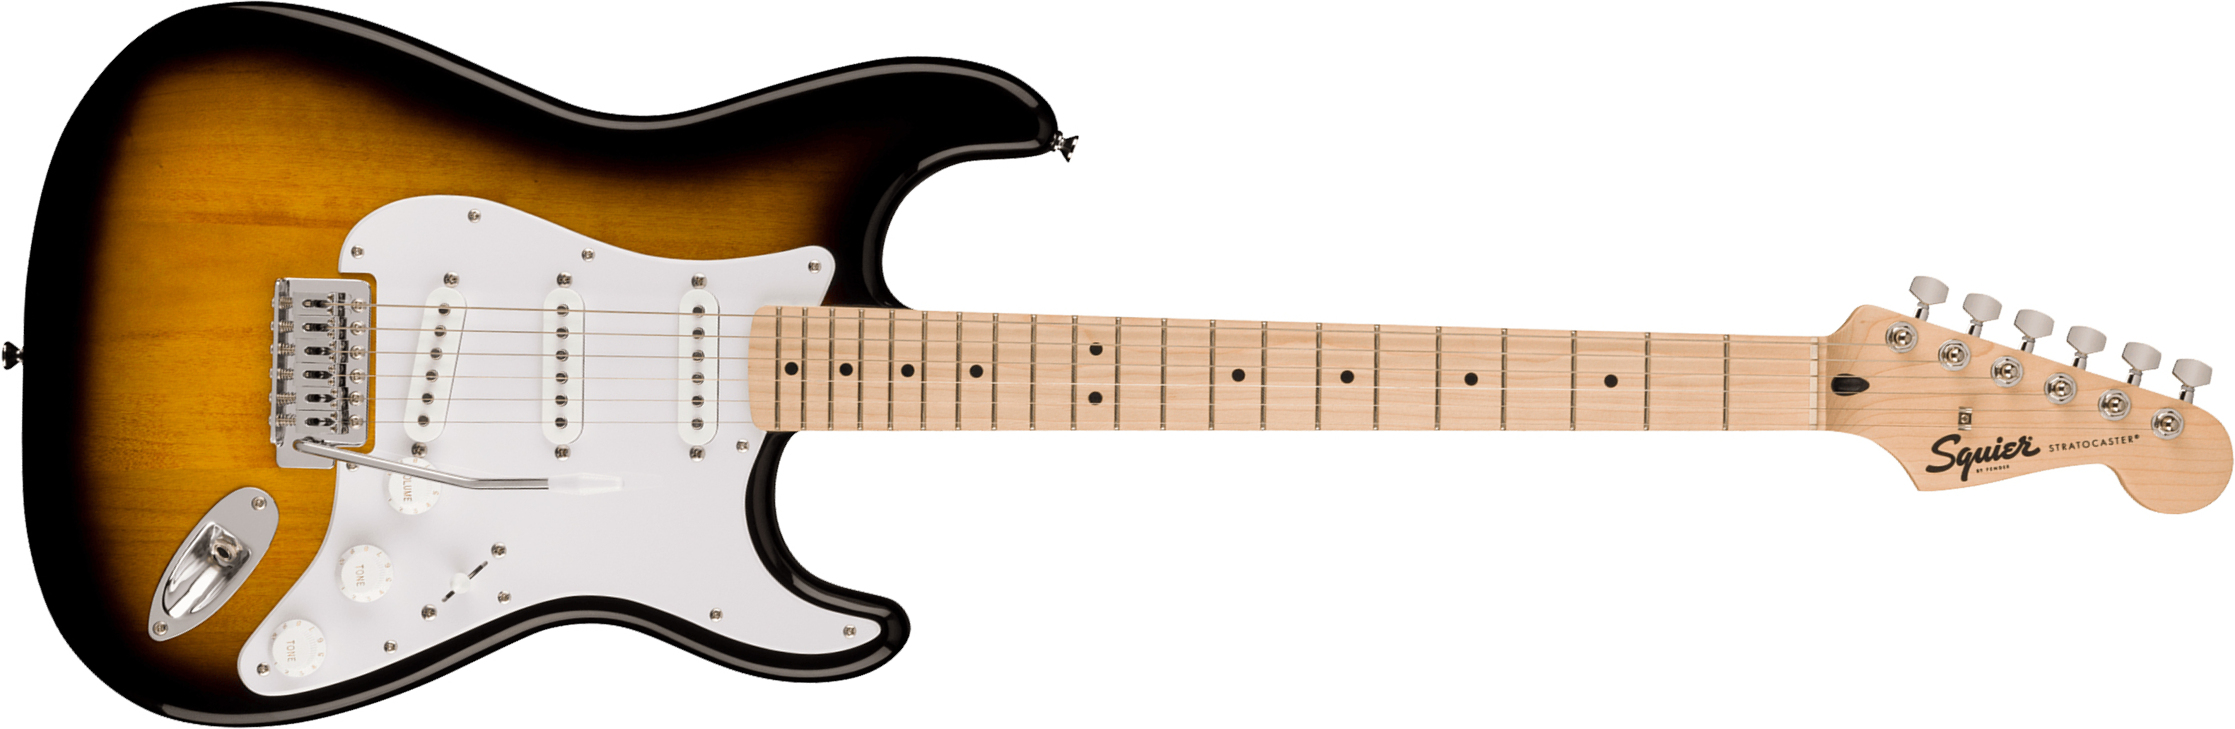 Squier Strat Sonic 3s Trem Mn - 2-color Sunburst - Str shape electric guitar - Main picture